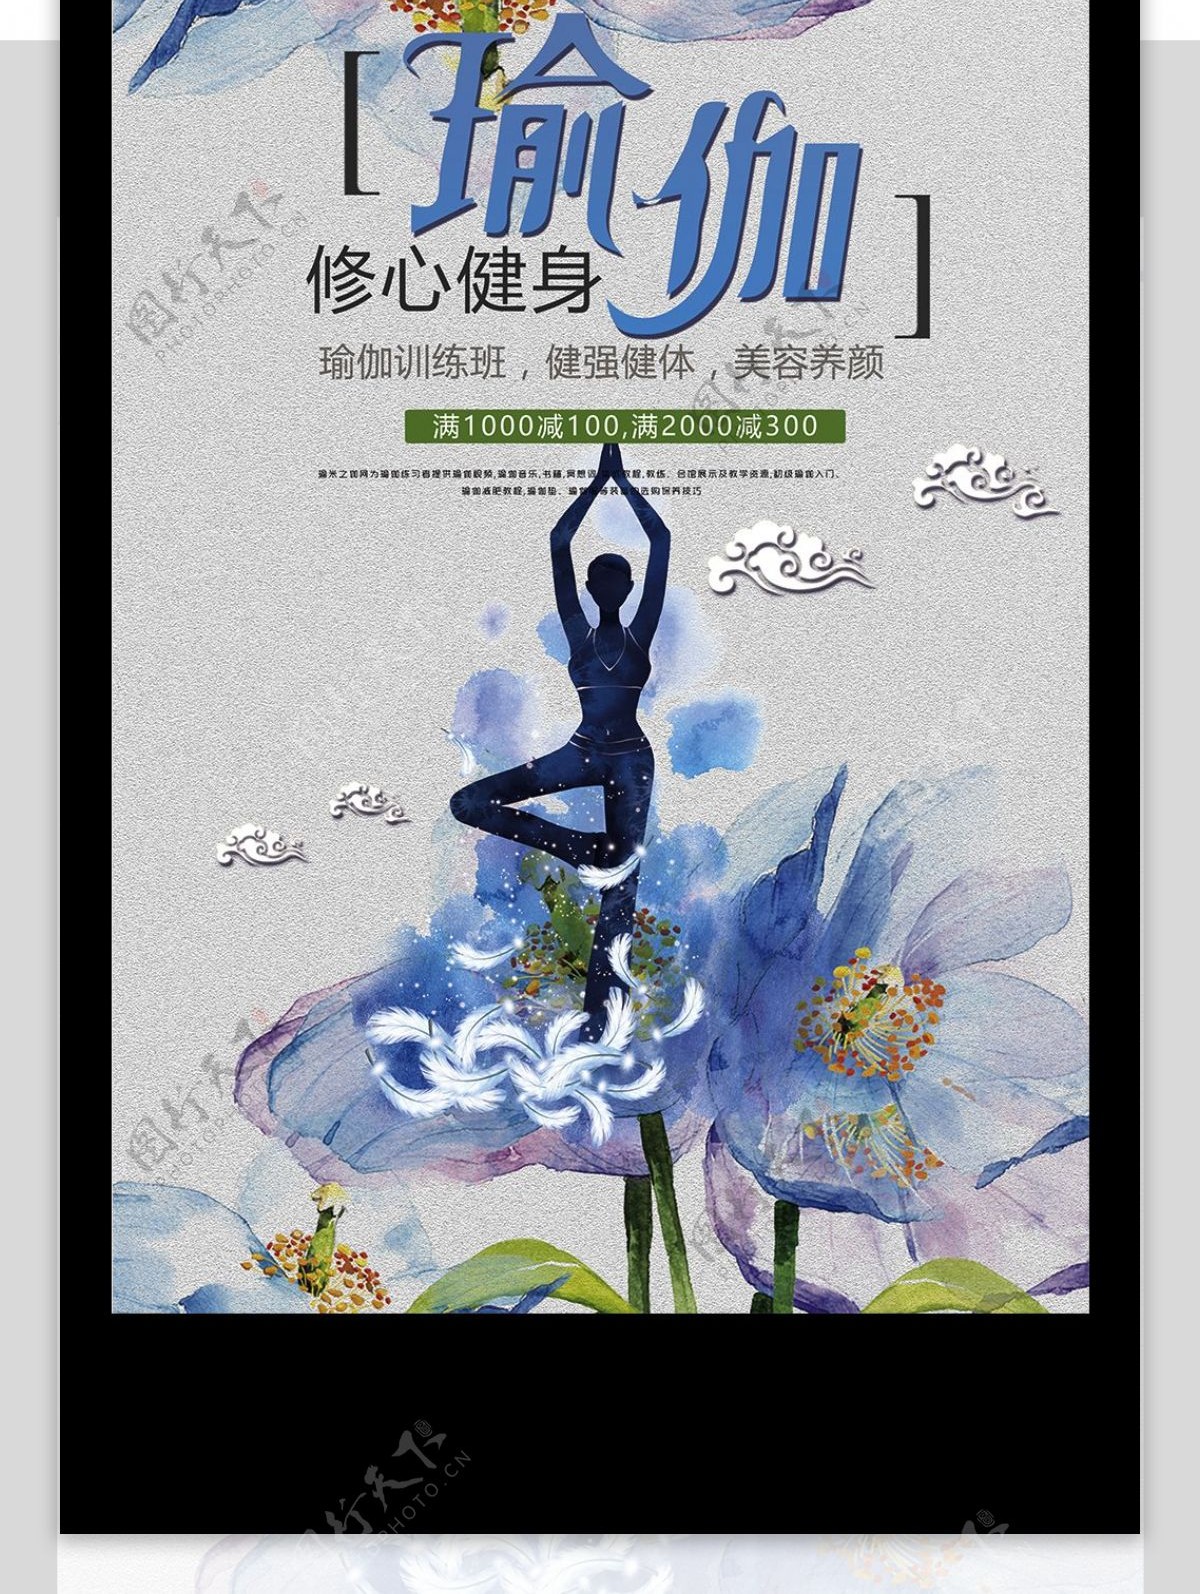 2017年插画风健身运动瑜伽宣传海报